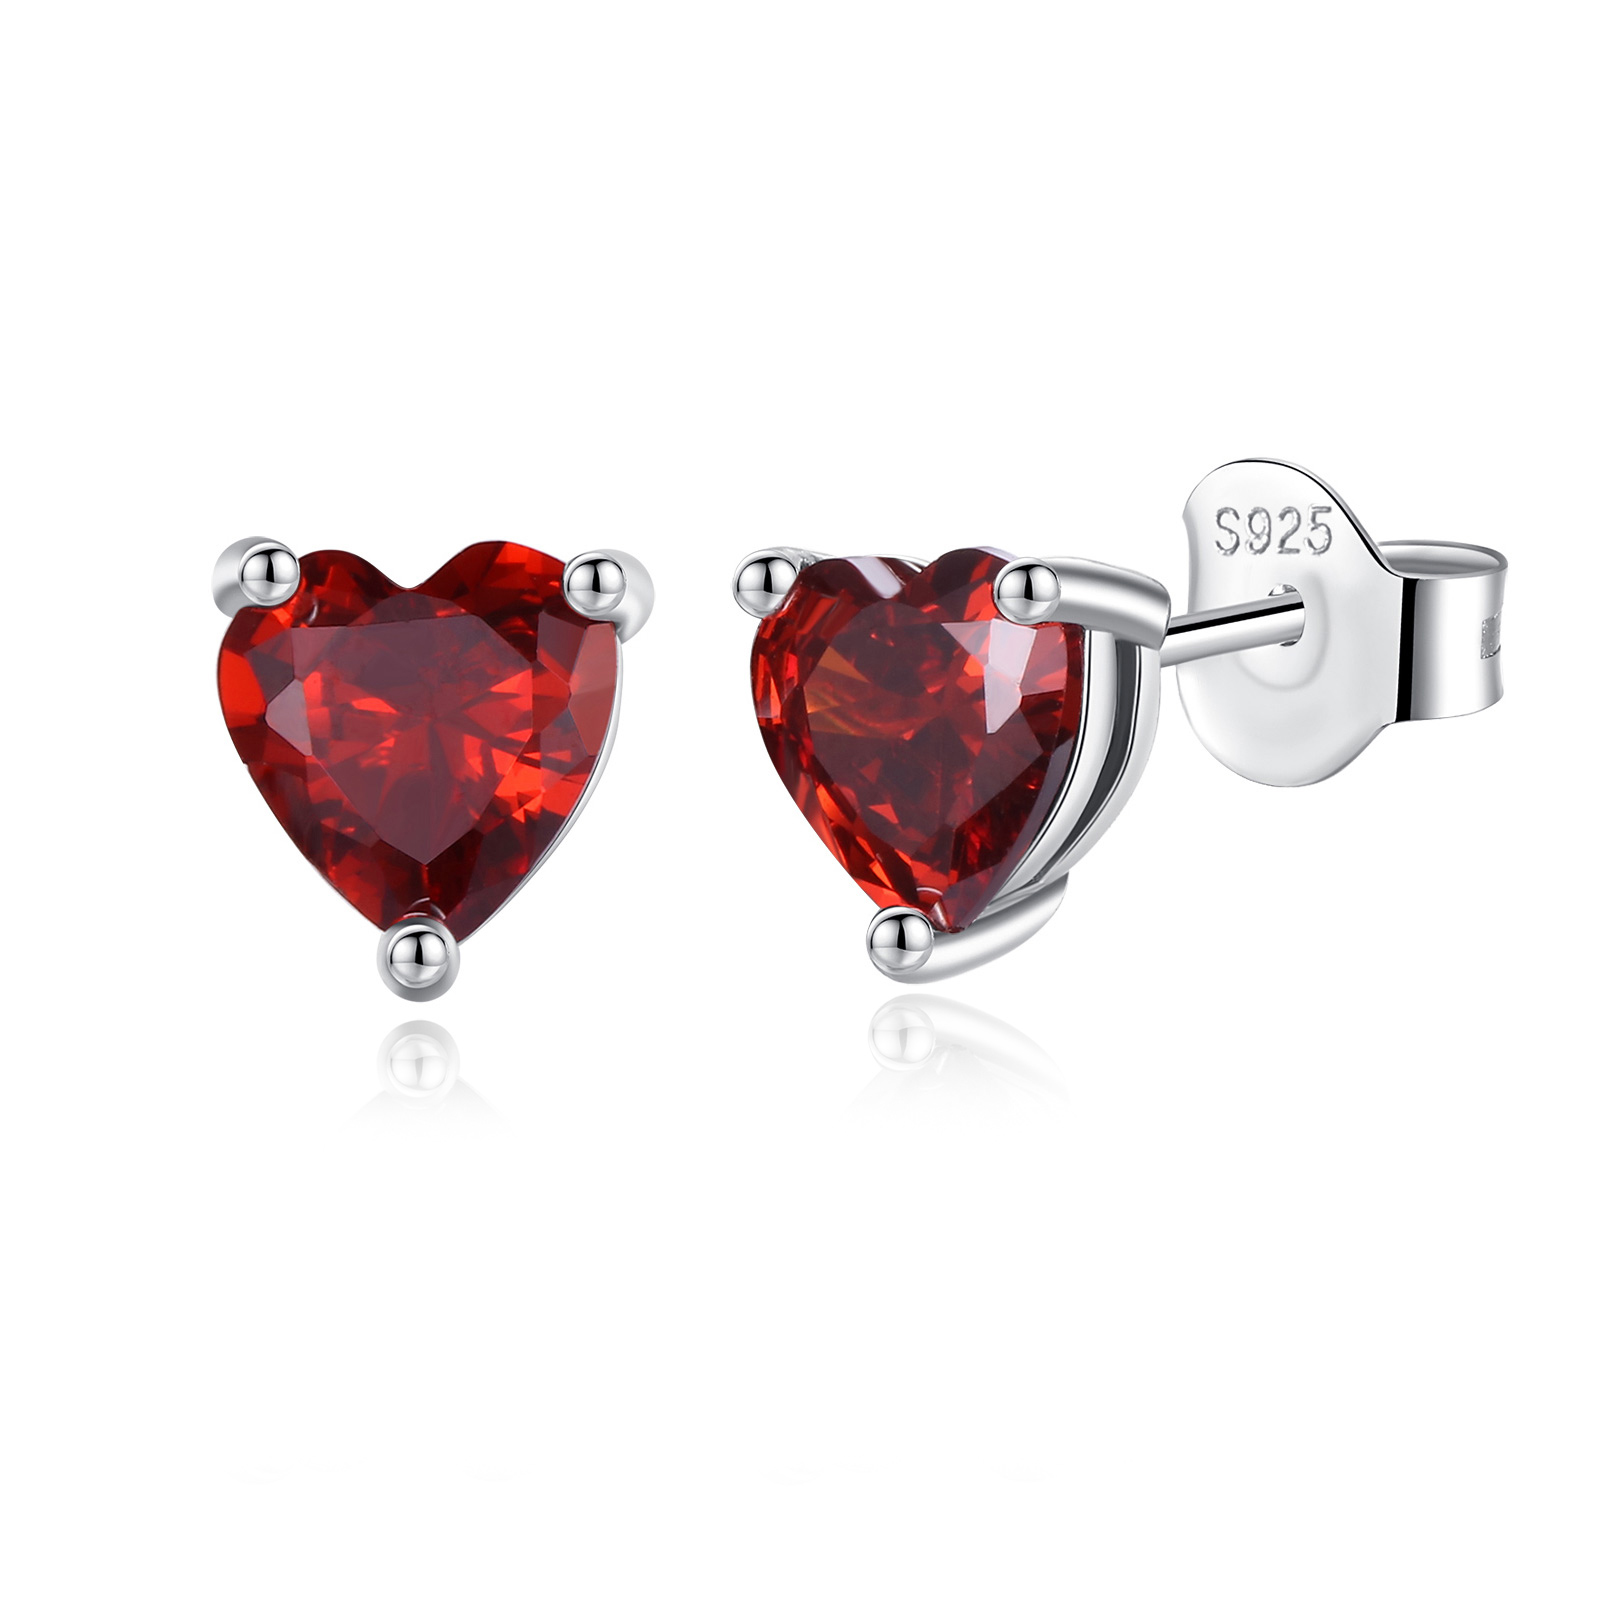 Merryshine Fashion Jewelry 925 Silver Red Love Heart Shaped Diamond Zircon Birthstone Stud Earrings for Women